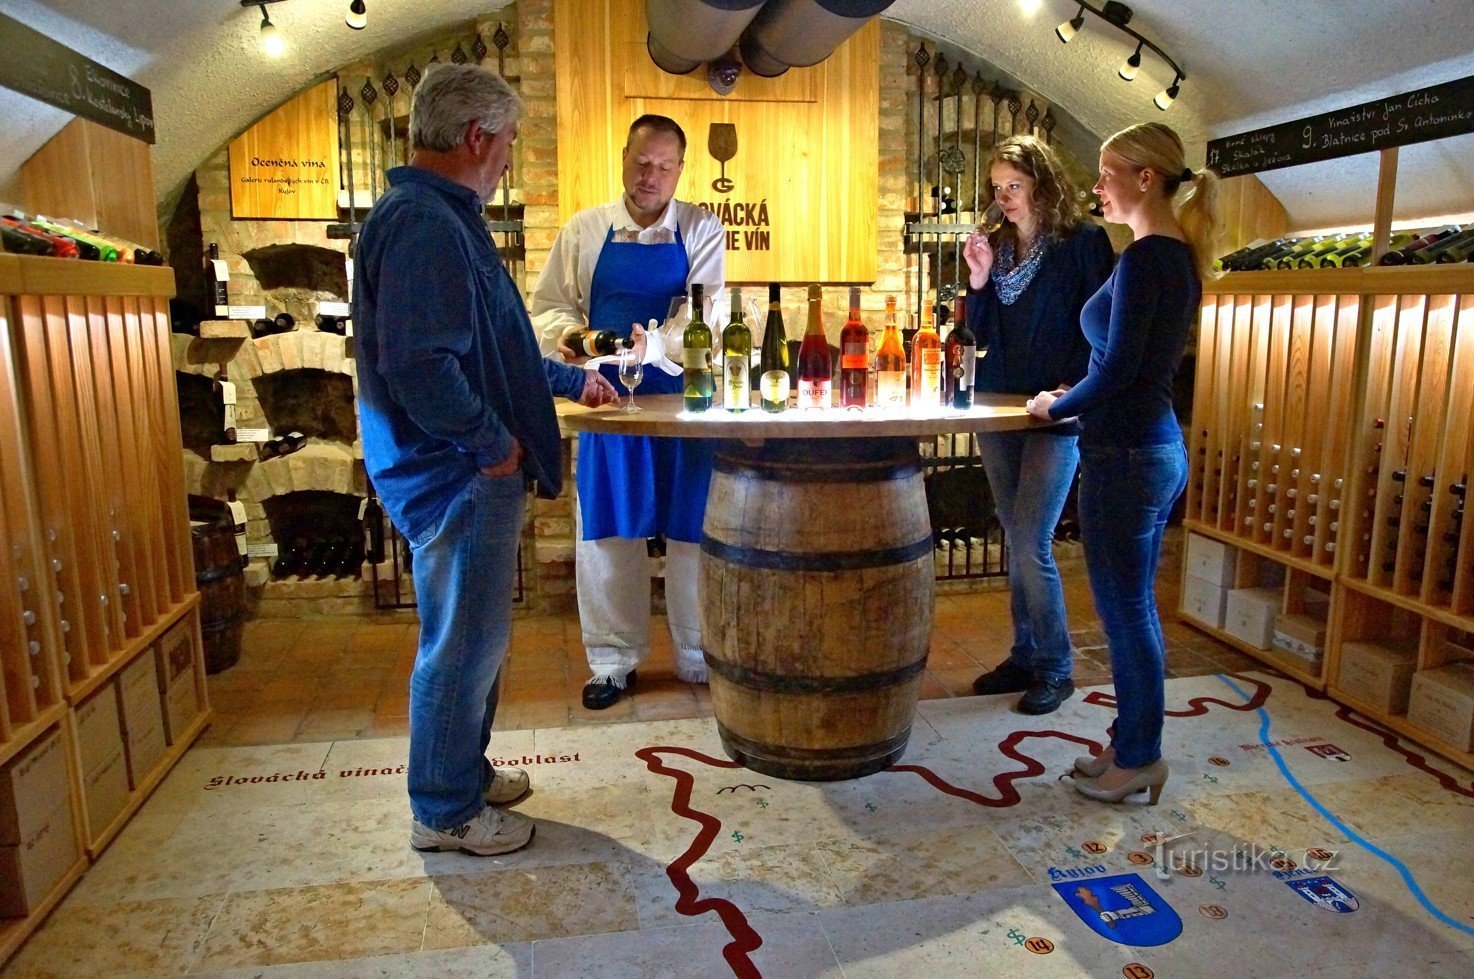 Slovakiska vingalleriet - Kyjov Town Hall Cellar